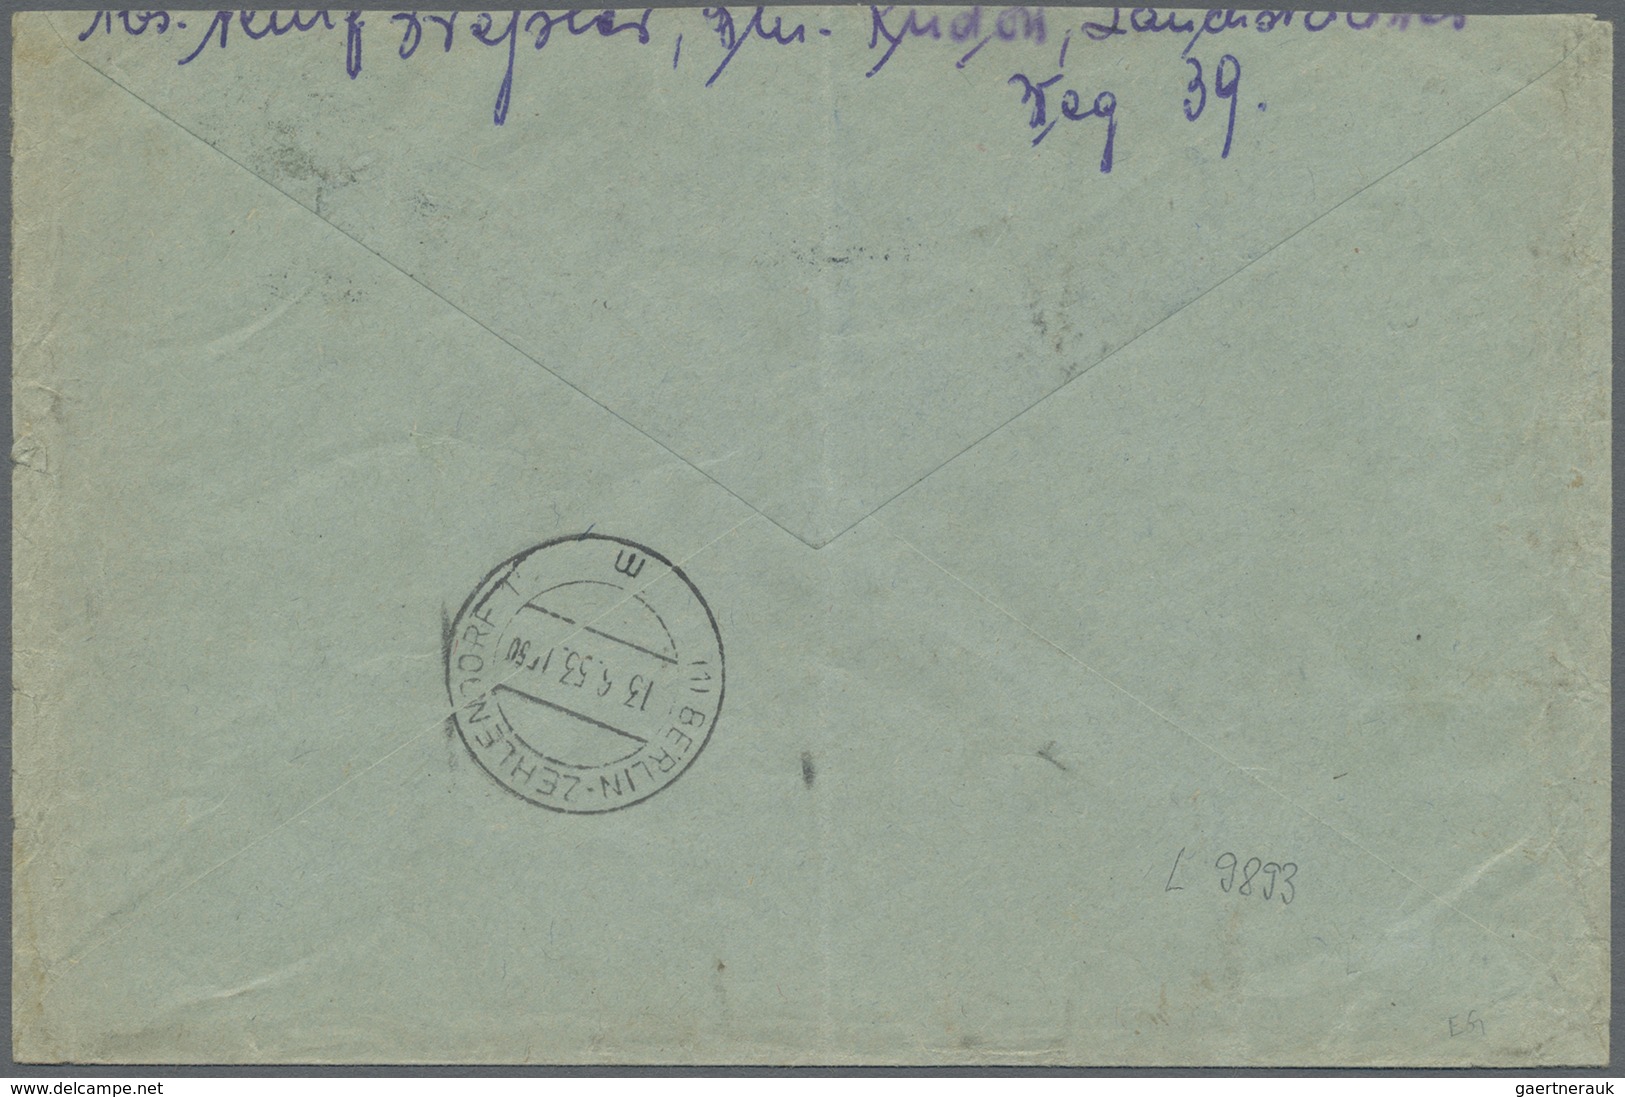 Br Berlin - Postschnelldienst: 1949/53:  Kleiner Posten Von Vier Schnelldienstbriefen, Alle Mit 80 Pfen - Briefe U. Dokumente